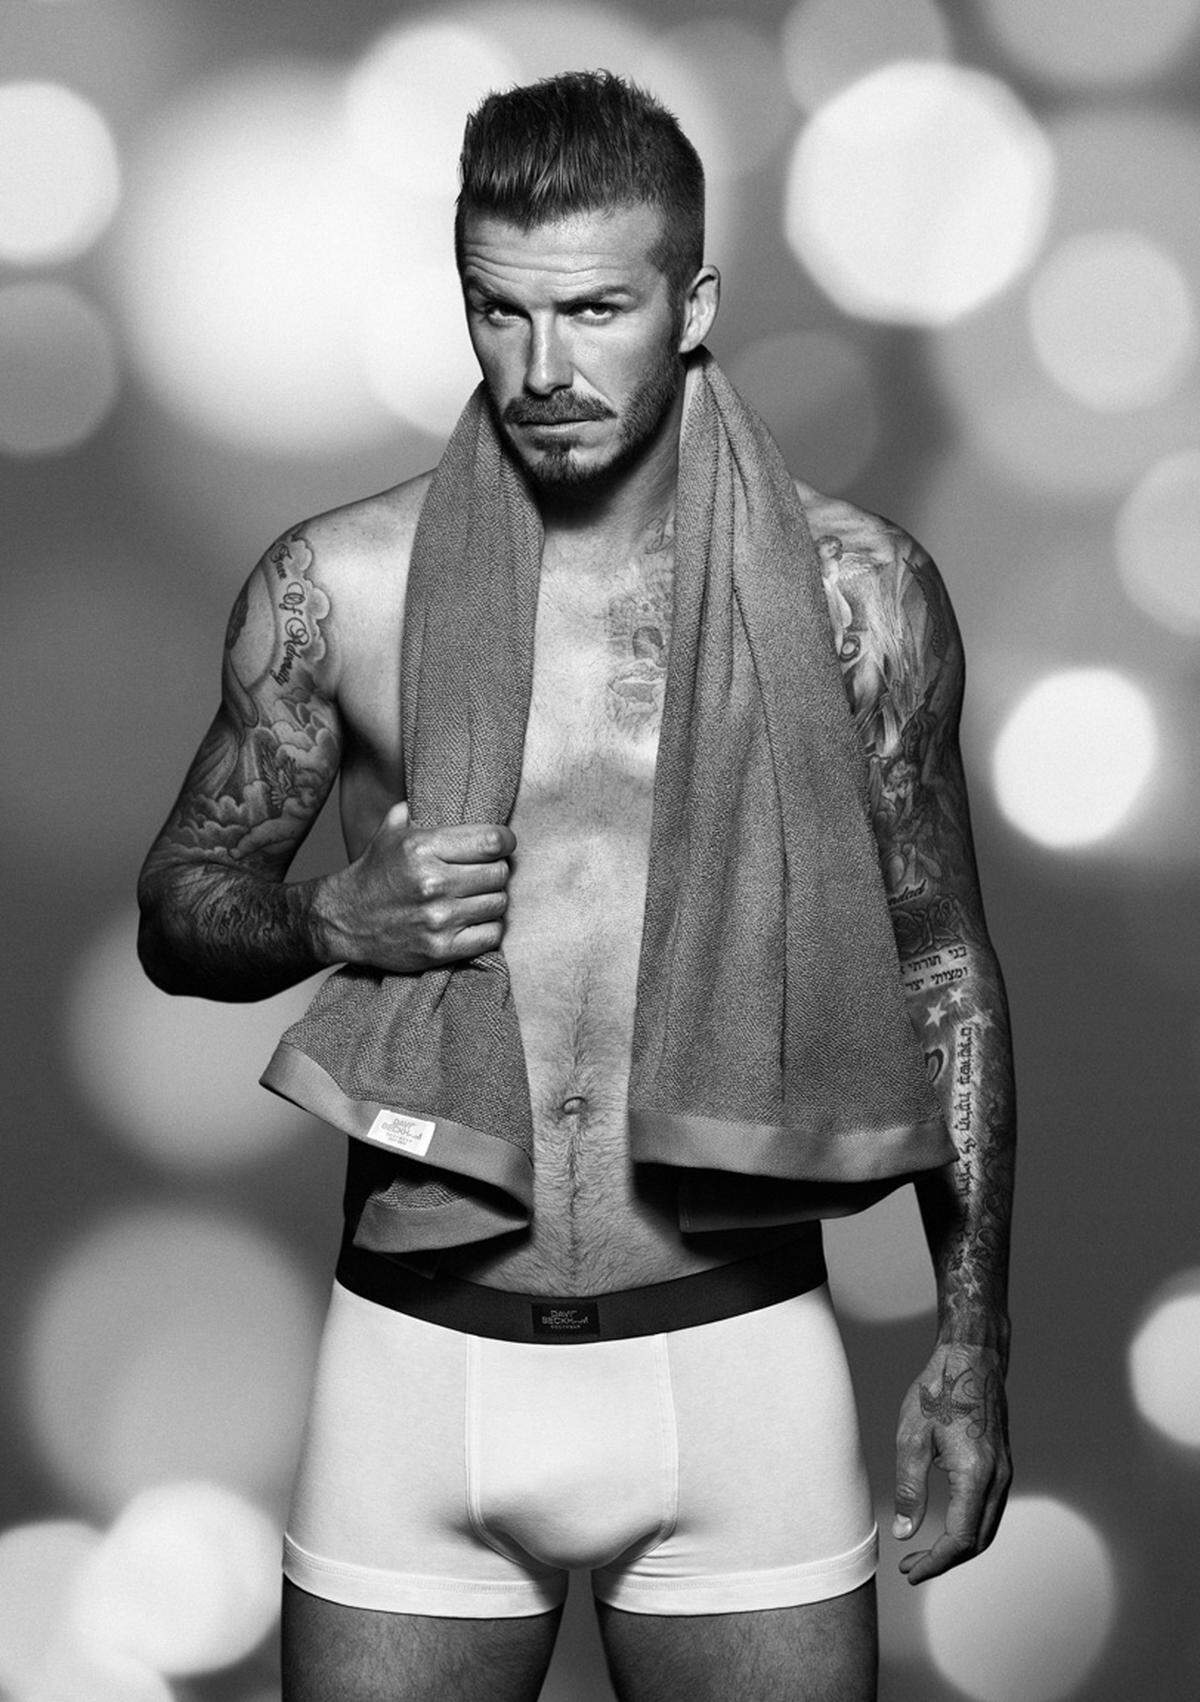 Pünktlich zu Weihnachten erschien die erste Unterwäschekollektion von David Beckham für H&M. Zwei weitere Kollektionen folgten auf sein erfolgreiches Designdebüt in diesem Jahr. Ihm ist es angeblich zuzuschreiben, dass lange Unterhosen und Slips wieder in Mode sind. Nachlese: David Beckham für H&M.